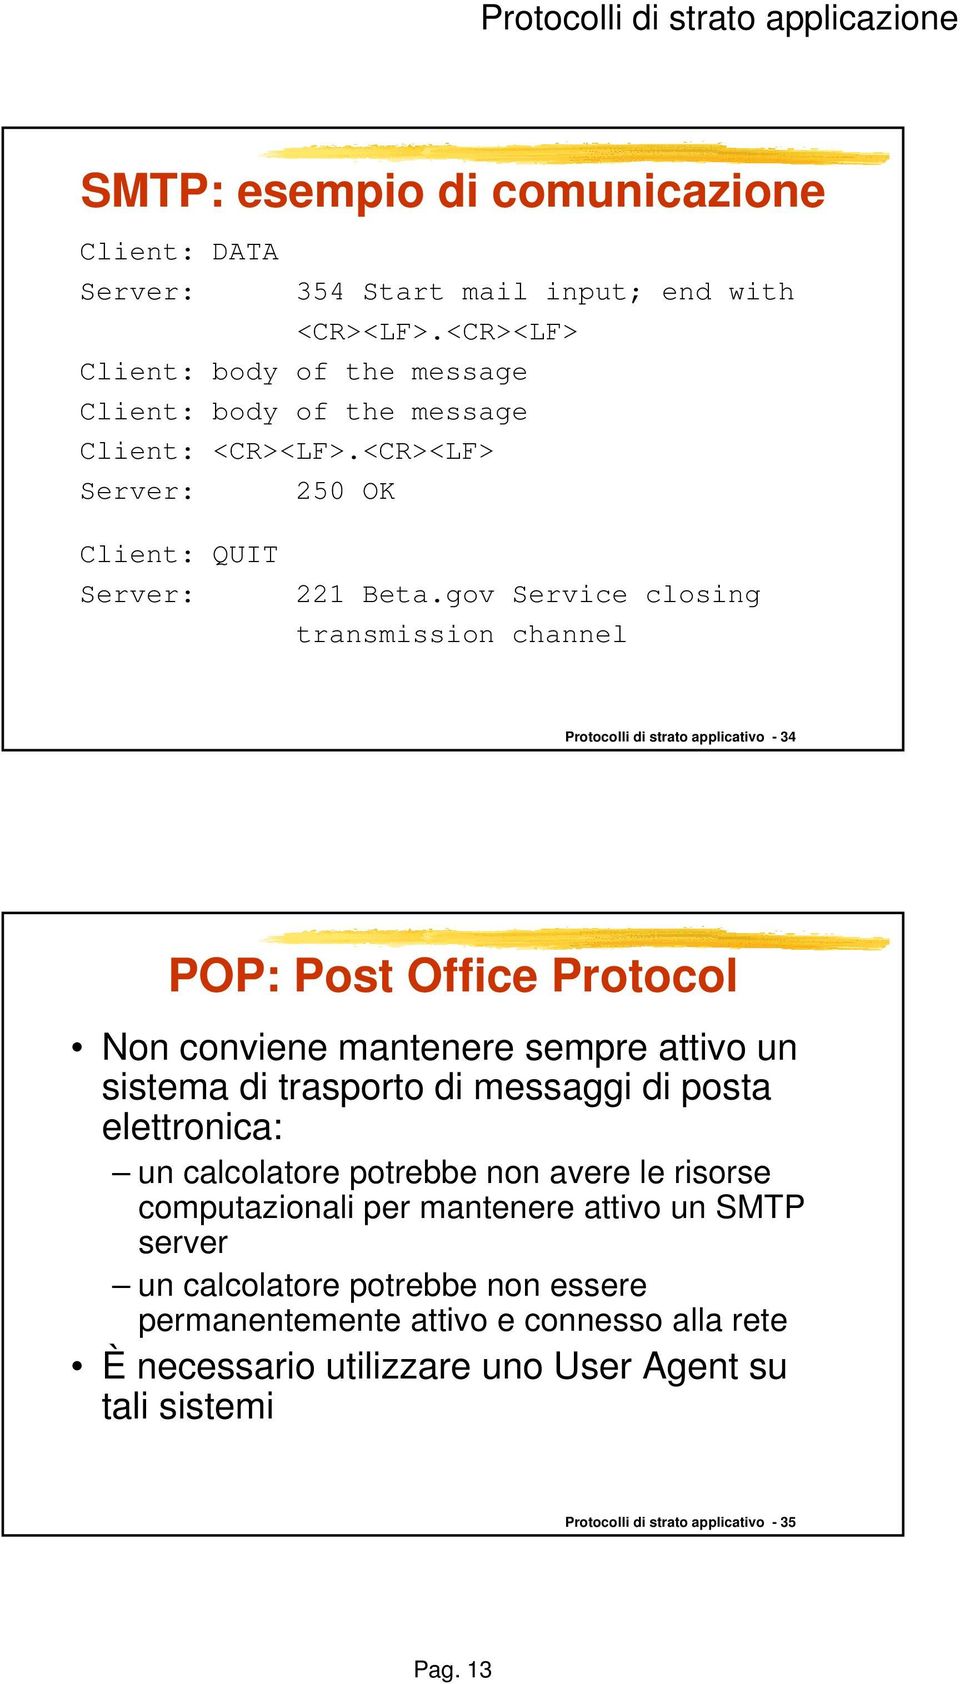 gov Service closing transmission channel Protocolli di strato applicativo - 34 POP: Post Office Protocol Non conviene mantenere sempre attivo un sistema di trasporto di